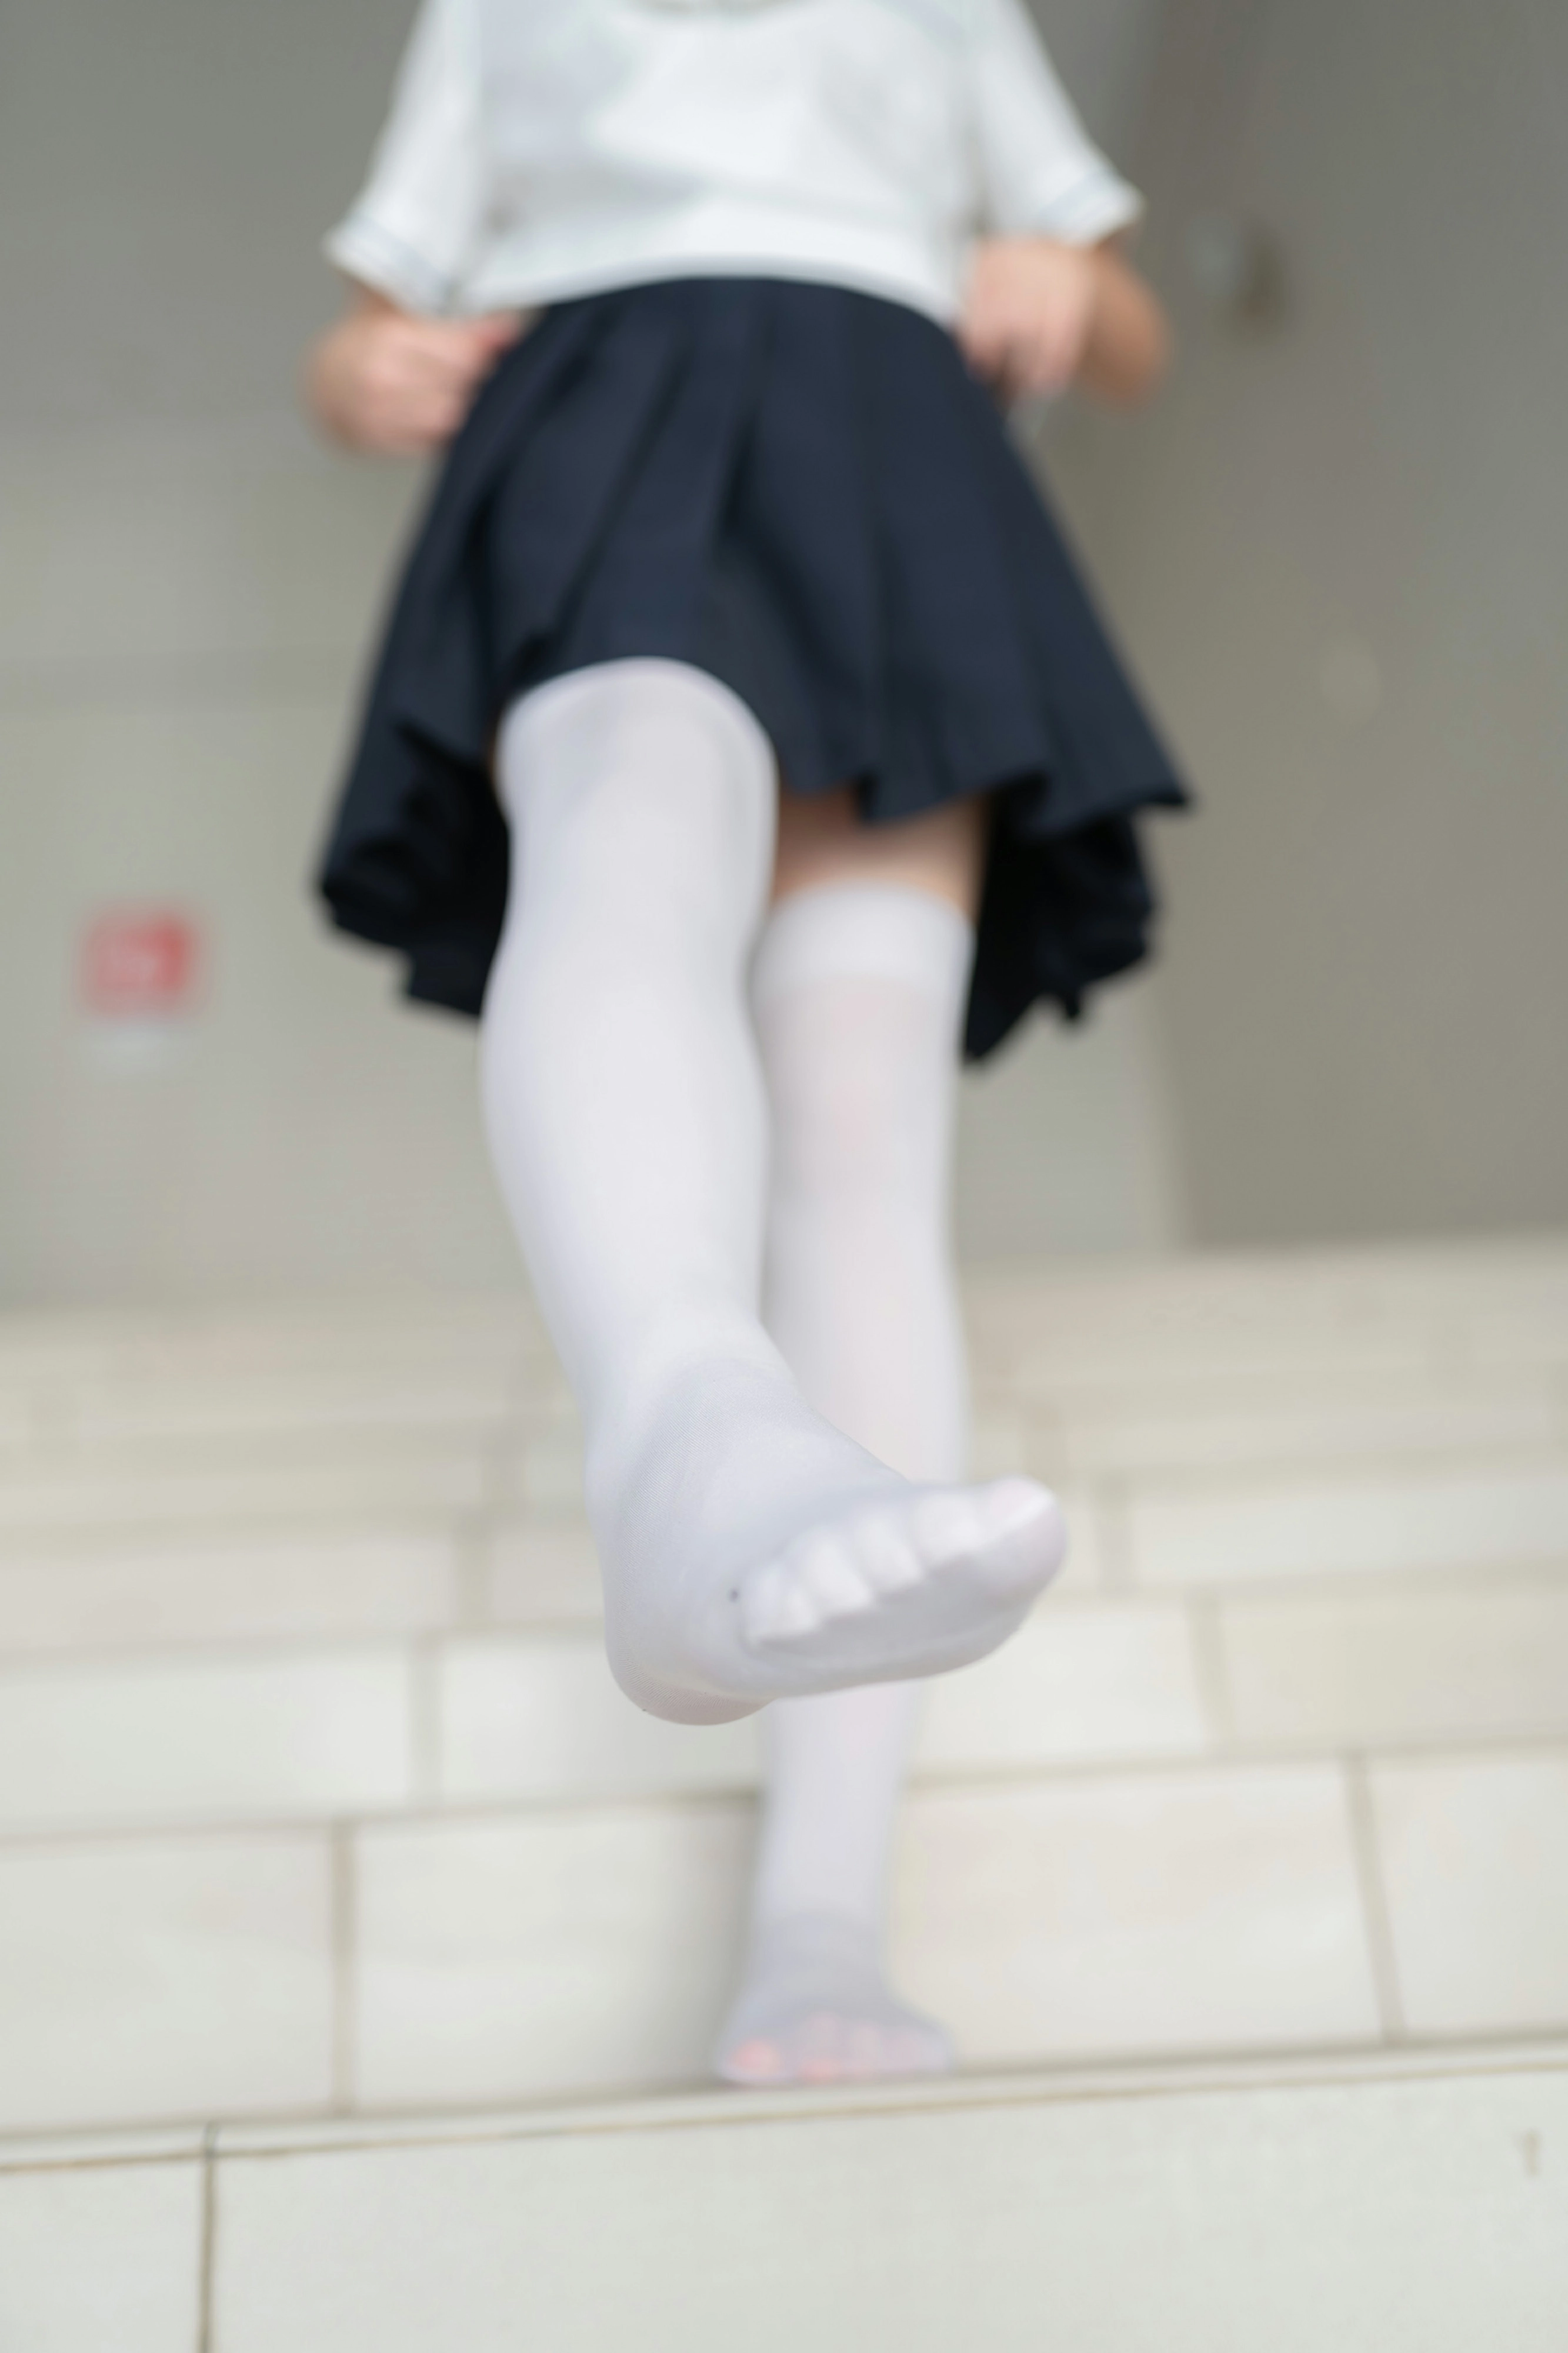 [风之领域]NO.146 小小水手少女萝莉 情趣制服与短裙加白色丝袜美腿性感私房写真集,